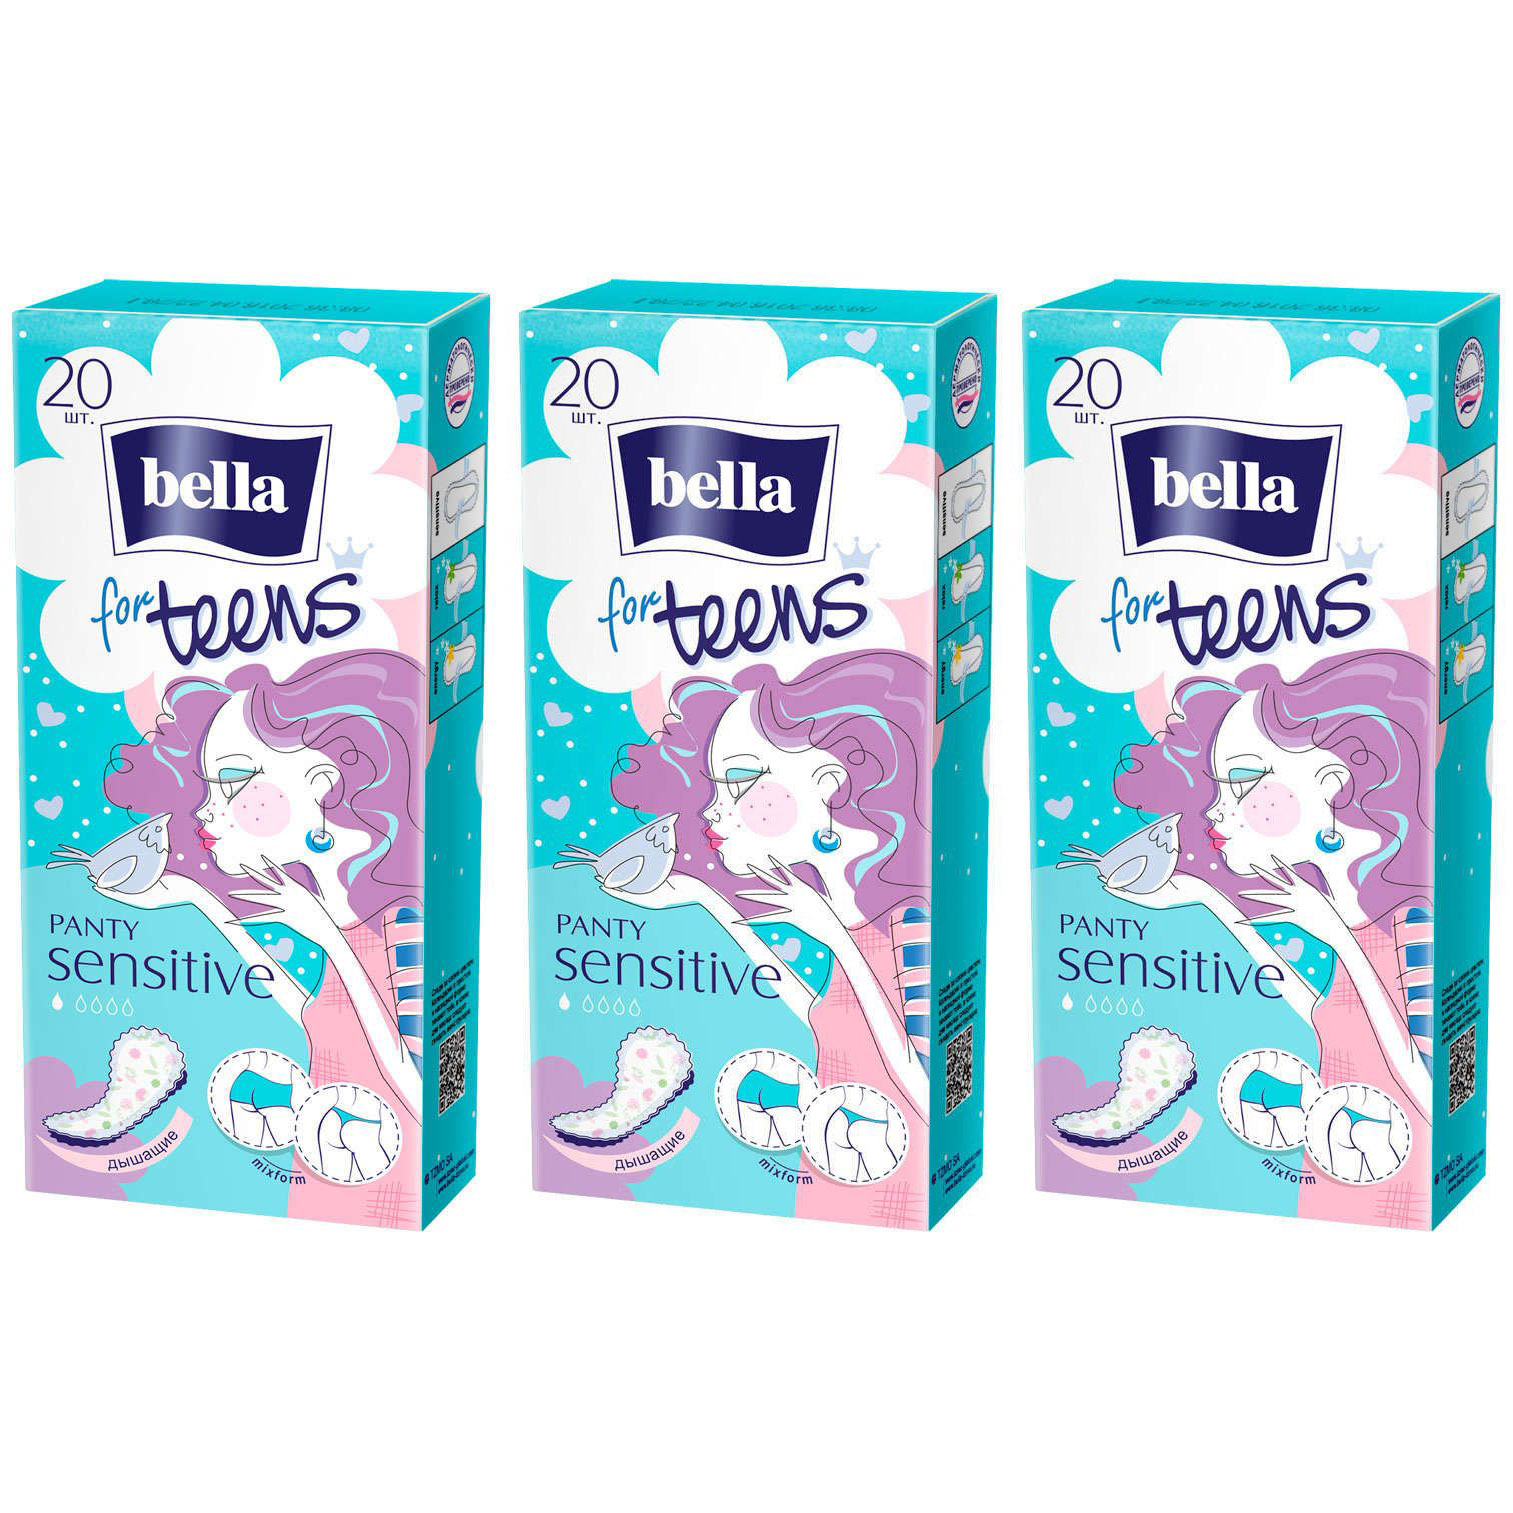 Прокладки ежедневные экстратонкие BELLA FOR TEENS Sensitive, 20шт, 3 уп. прокладки bella ежедневные panty sensitive 20штук 6 упаковок